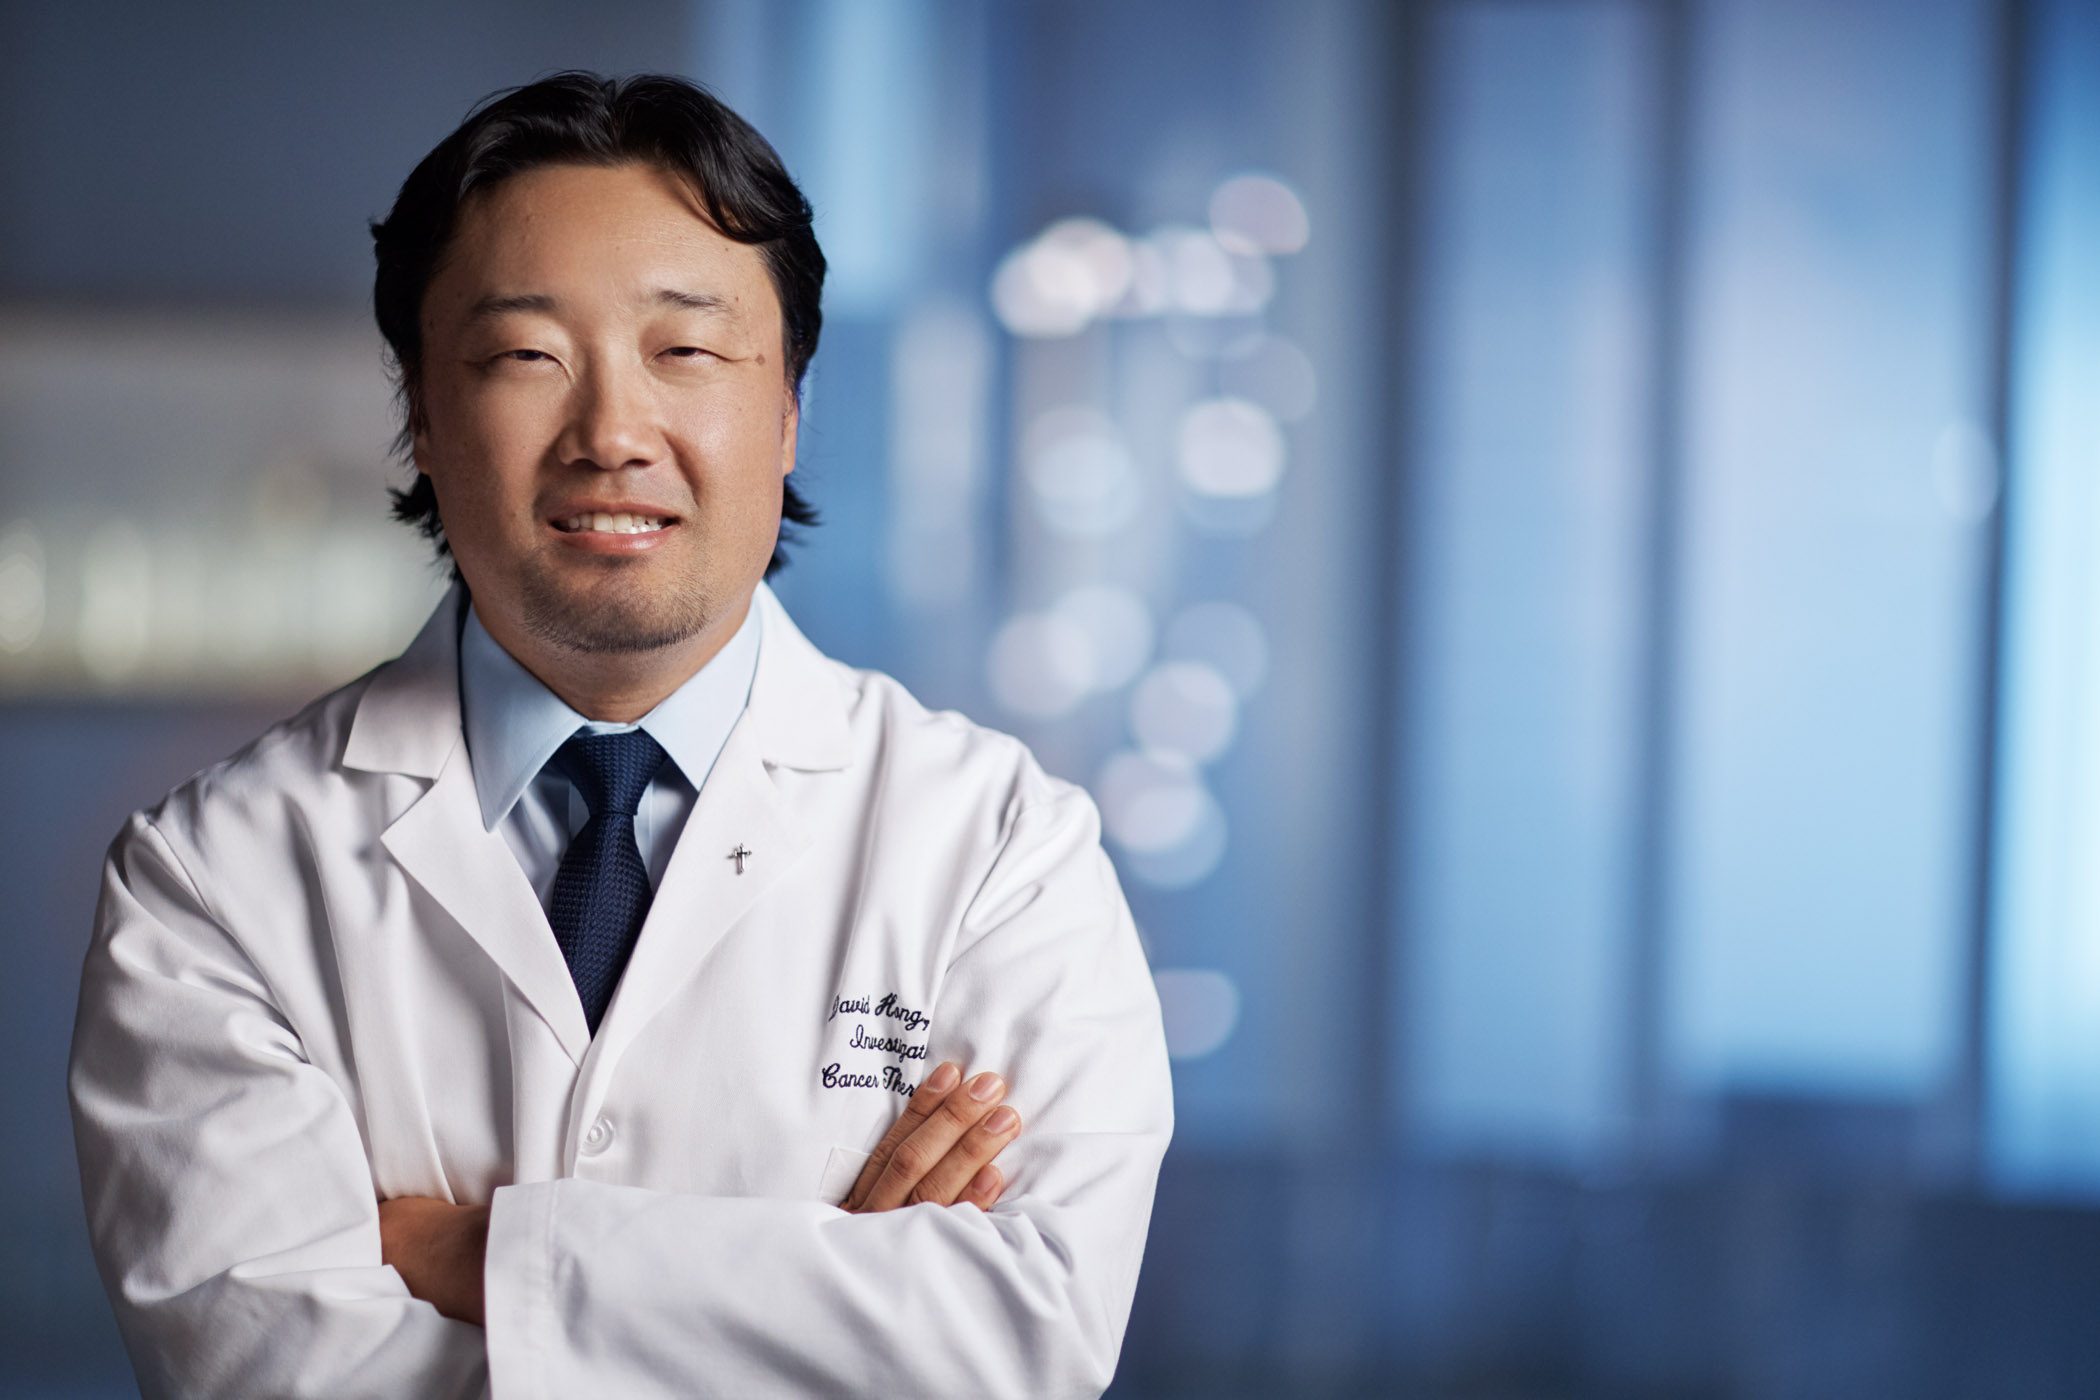 有关癌症的博客文章:David Hong，医学博士，讨论了一期临床试验